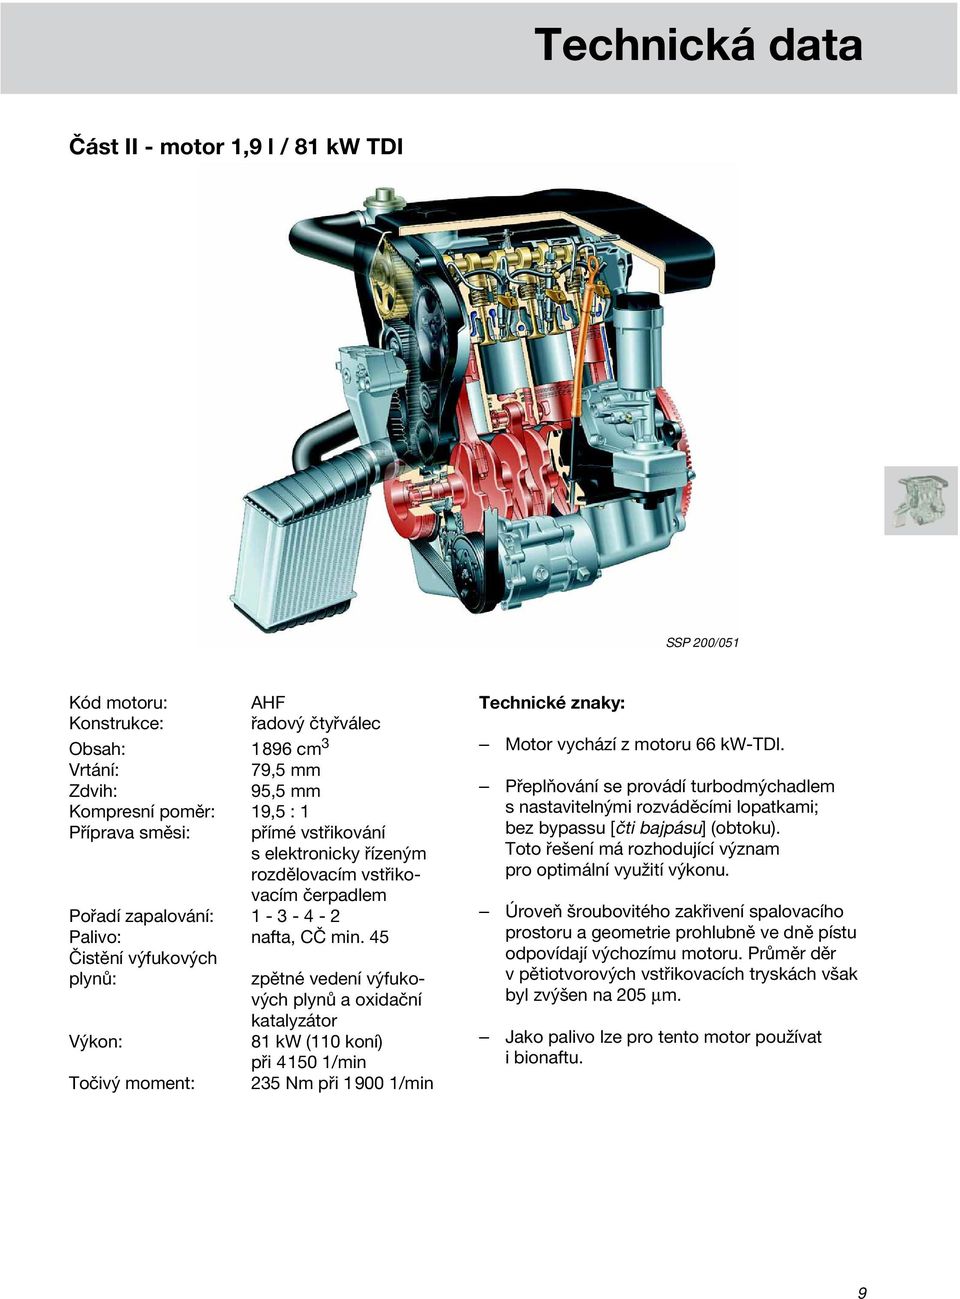 45 Čistění výfukových plynů: Výkon: Točivý moment: zpětné vedení výfukových plynů a oxidační katalyzátor 81 kw (110 koní) při 4150 1/min 235 Nm při 1900 1/min Technické znaky: Motor vychází z motoru